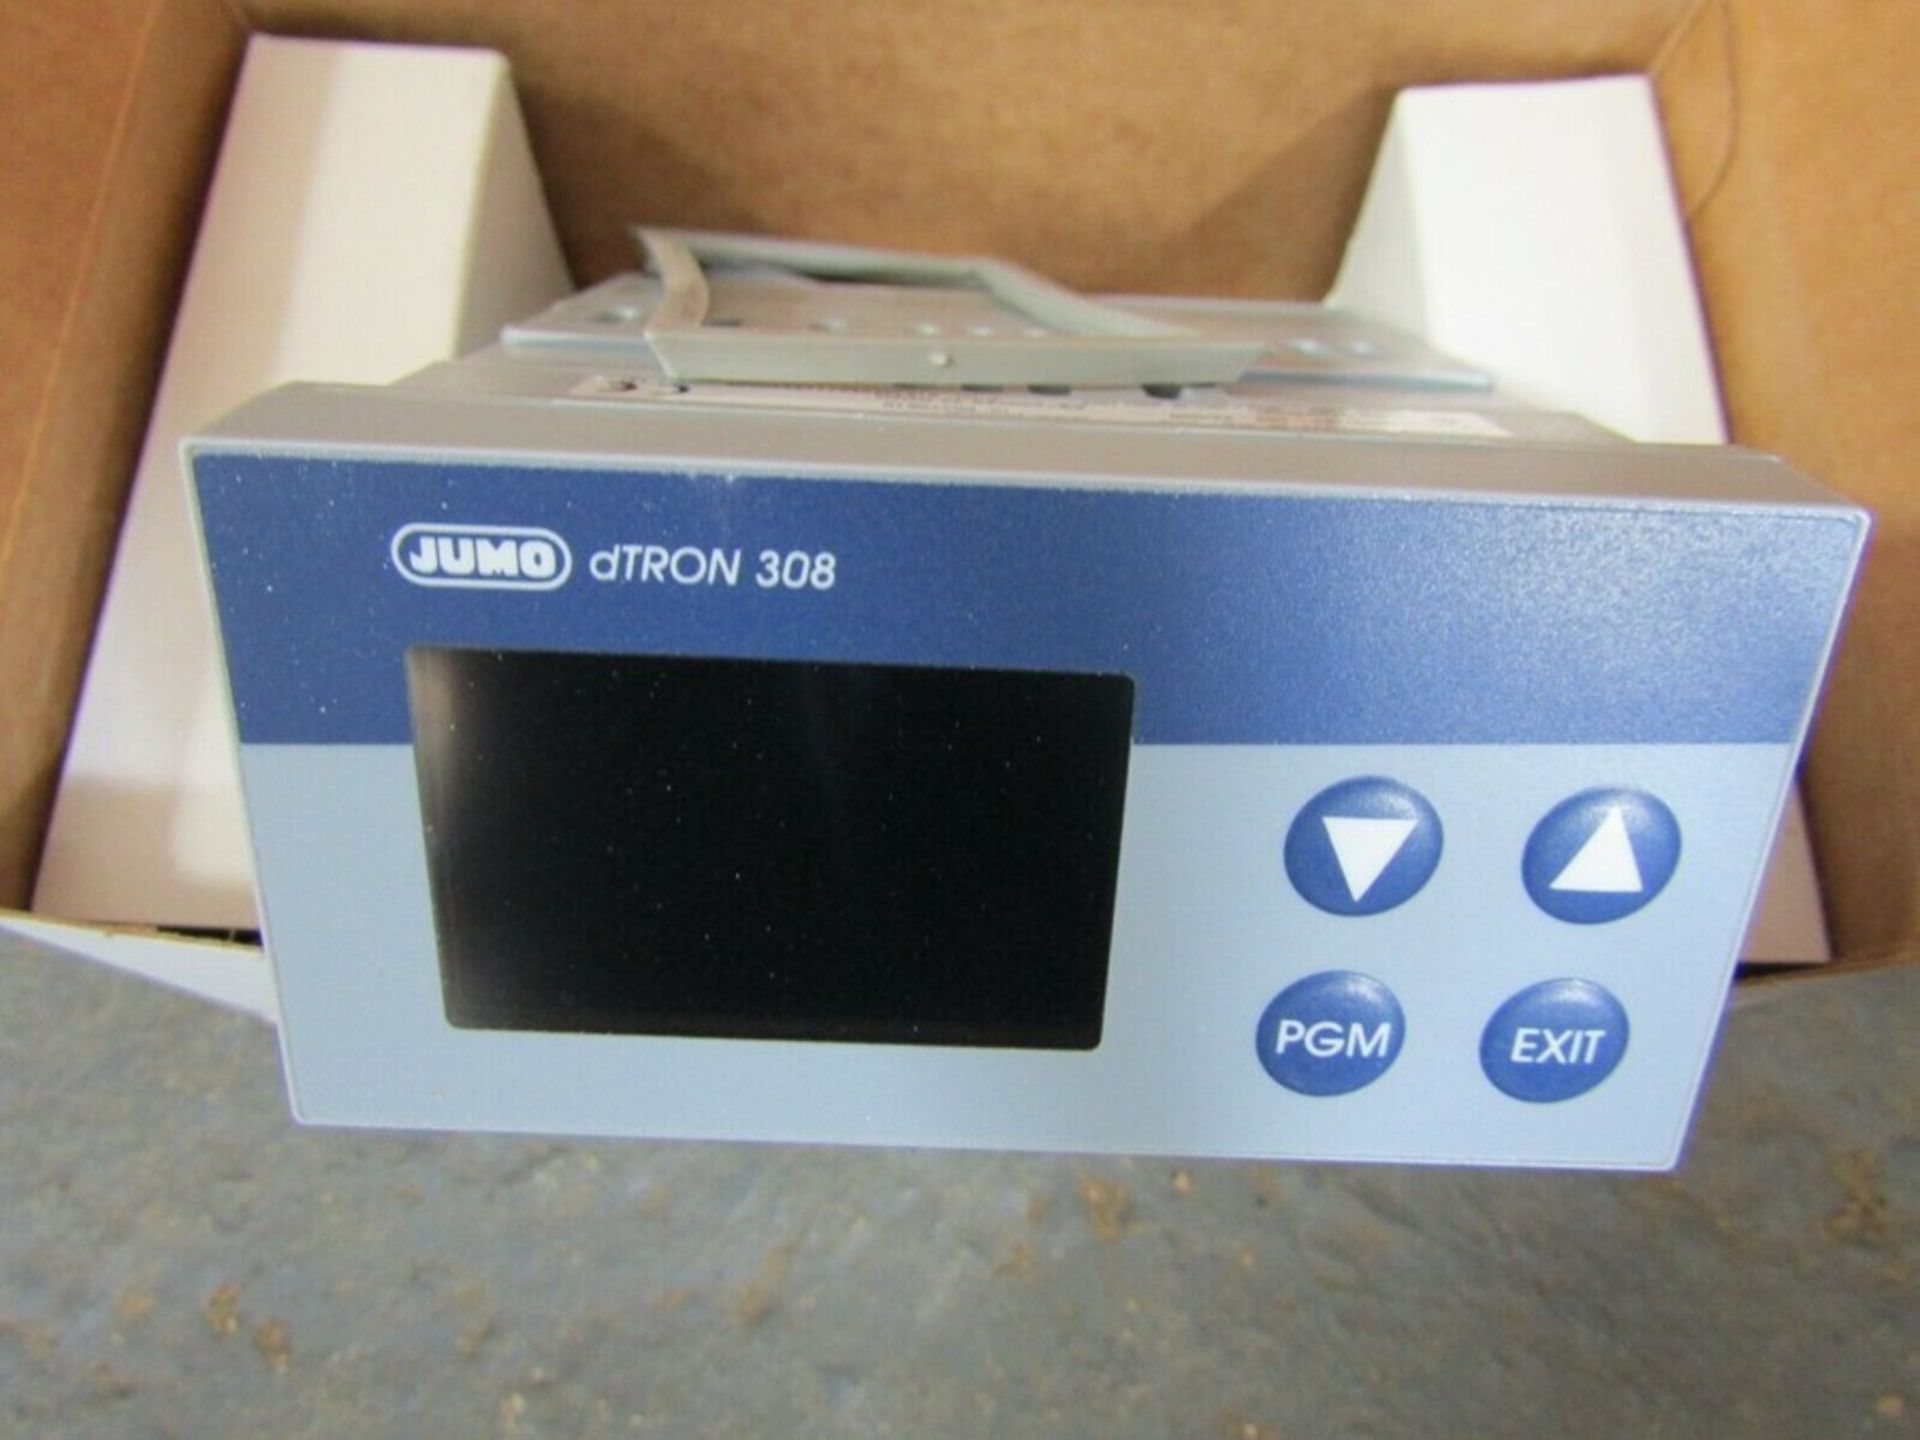 Jumo PID Temperature Controller dTron 308 - 96 x 48mm - 110 240 Vac A3 6137580